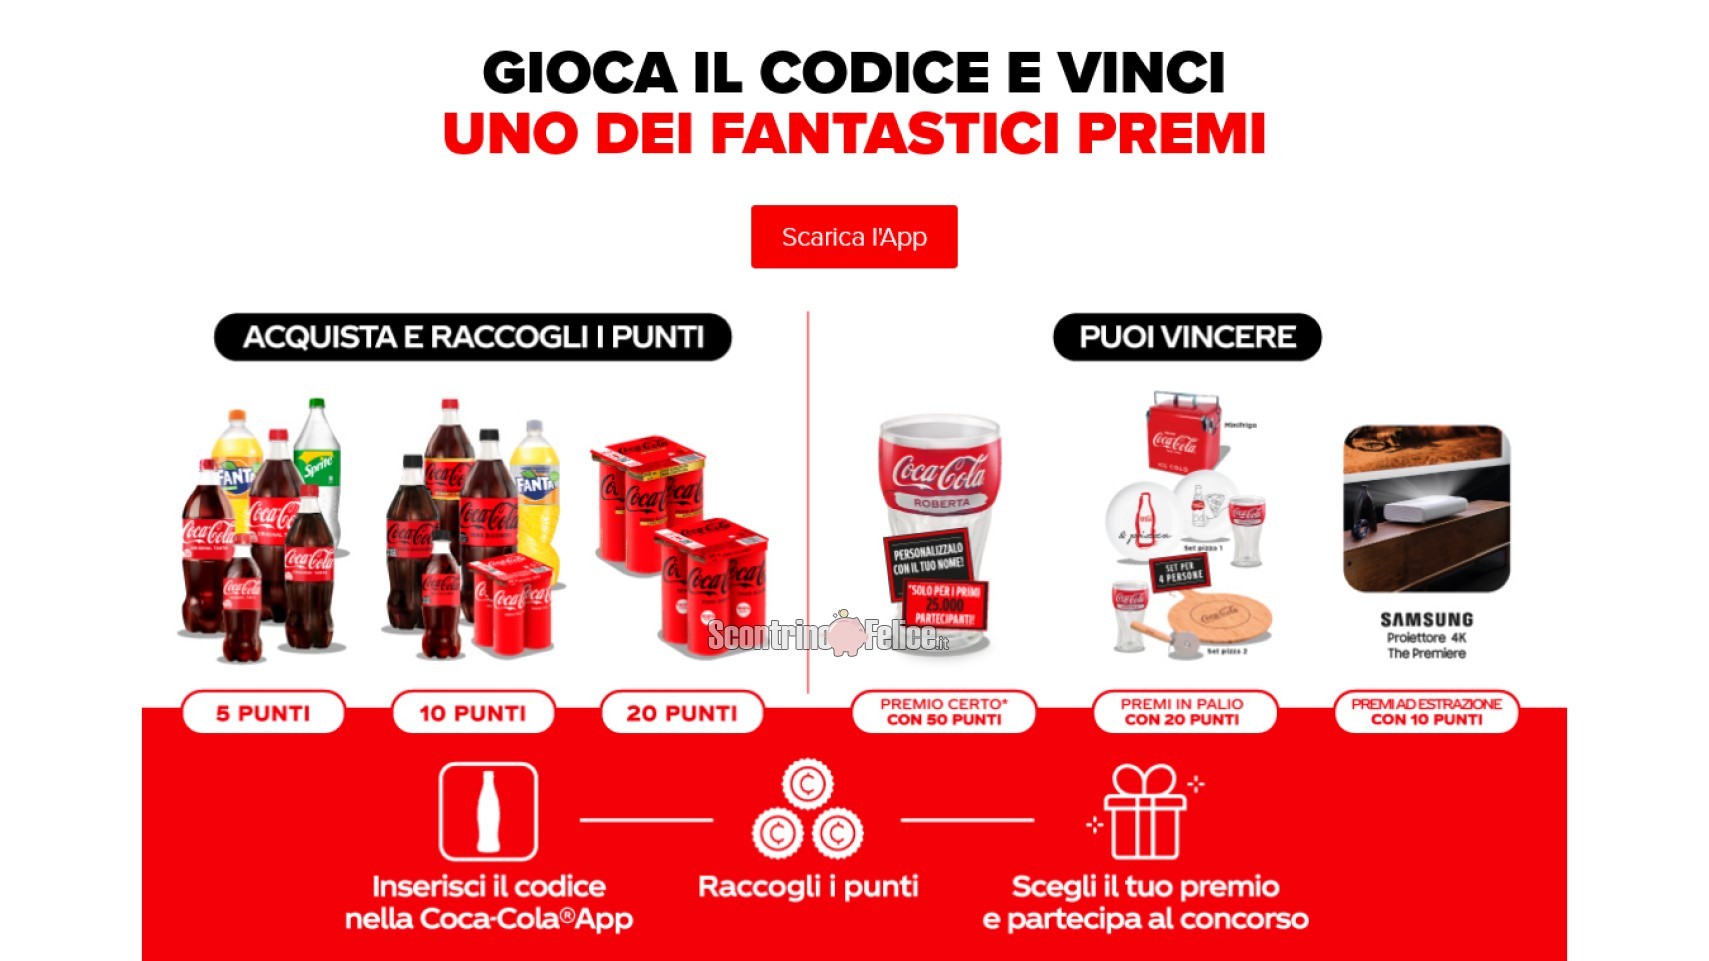 “Ogni momento in famiglia è magico con Coca-Cola”: vinci premi brandizzati, proiettori Samsung e bicchieri personalizzati con nome (premio certo)